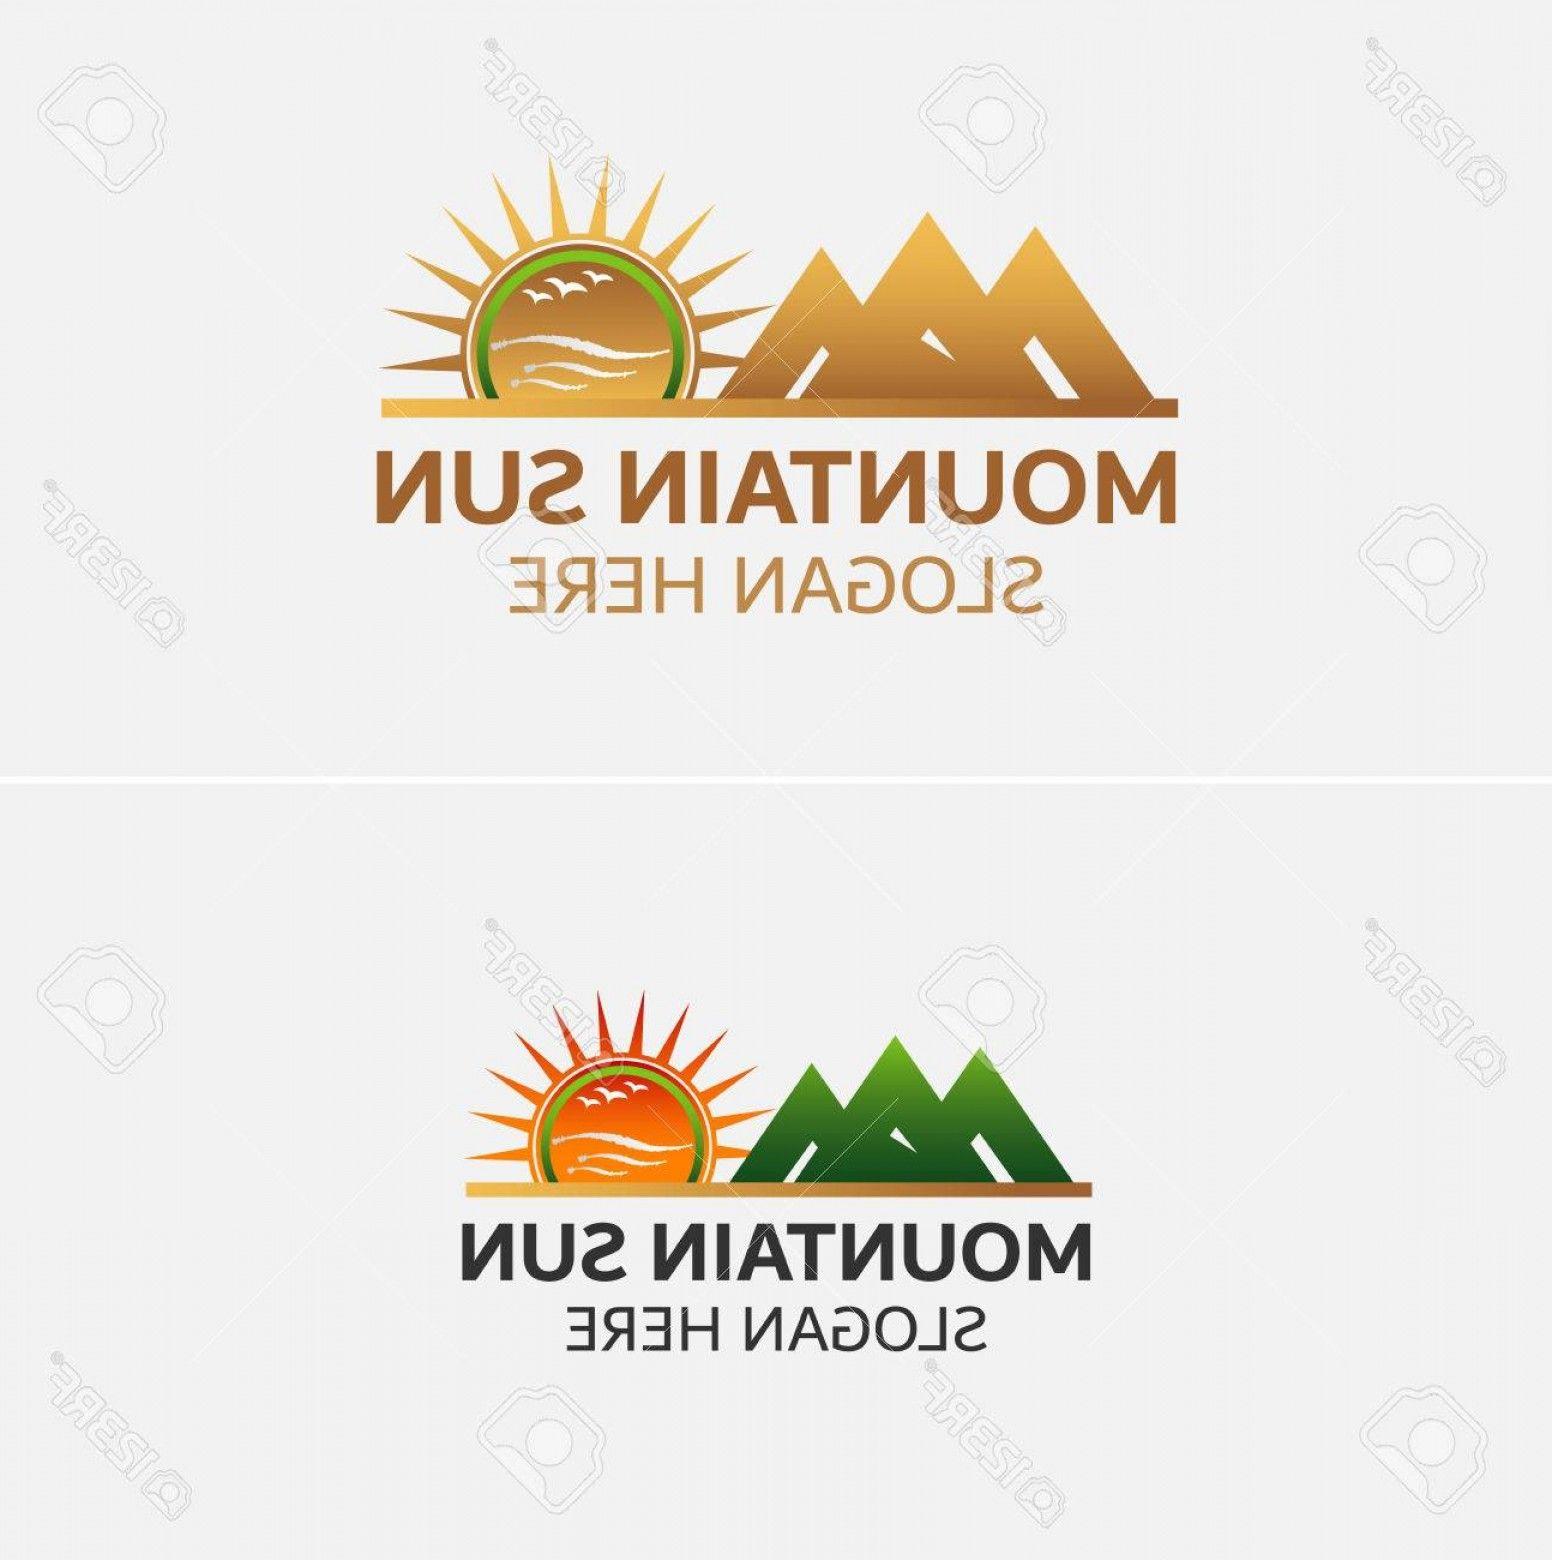 Golden Mountain Logo - Photostock Vector Golden Mountains Logo Vector With Sun Icon